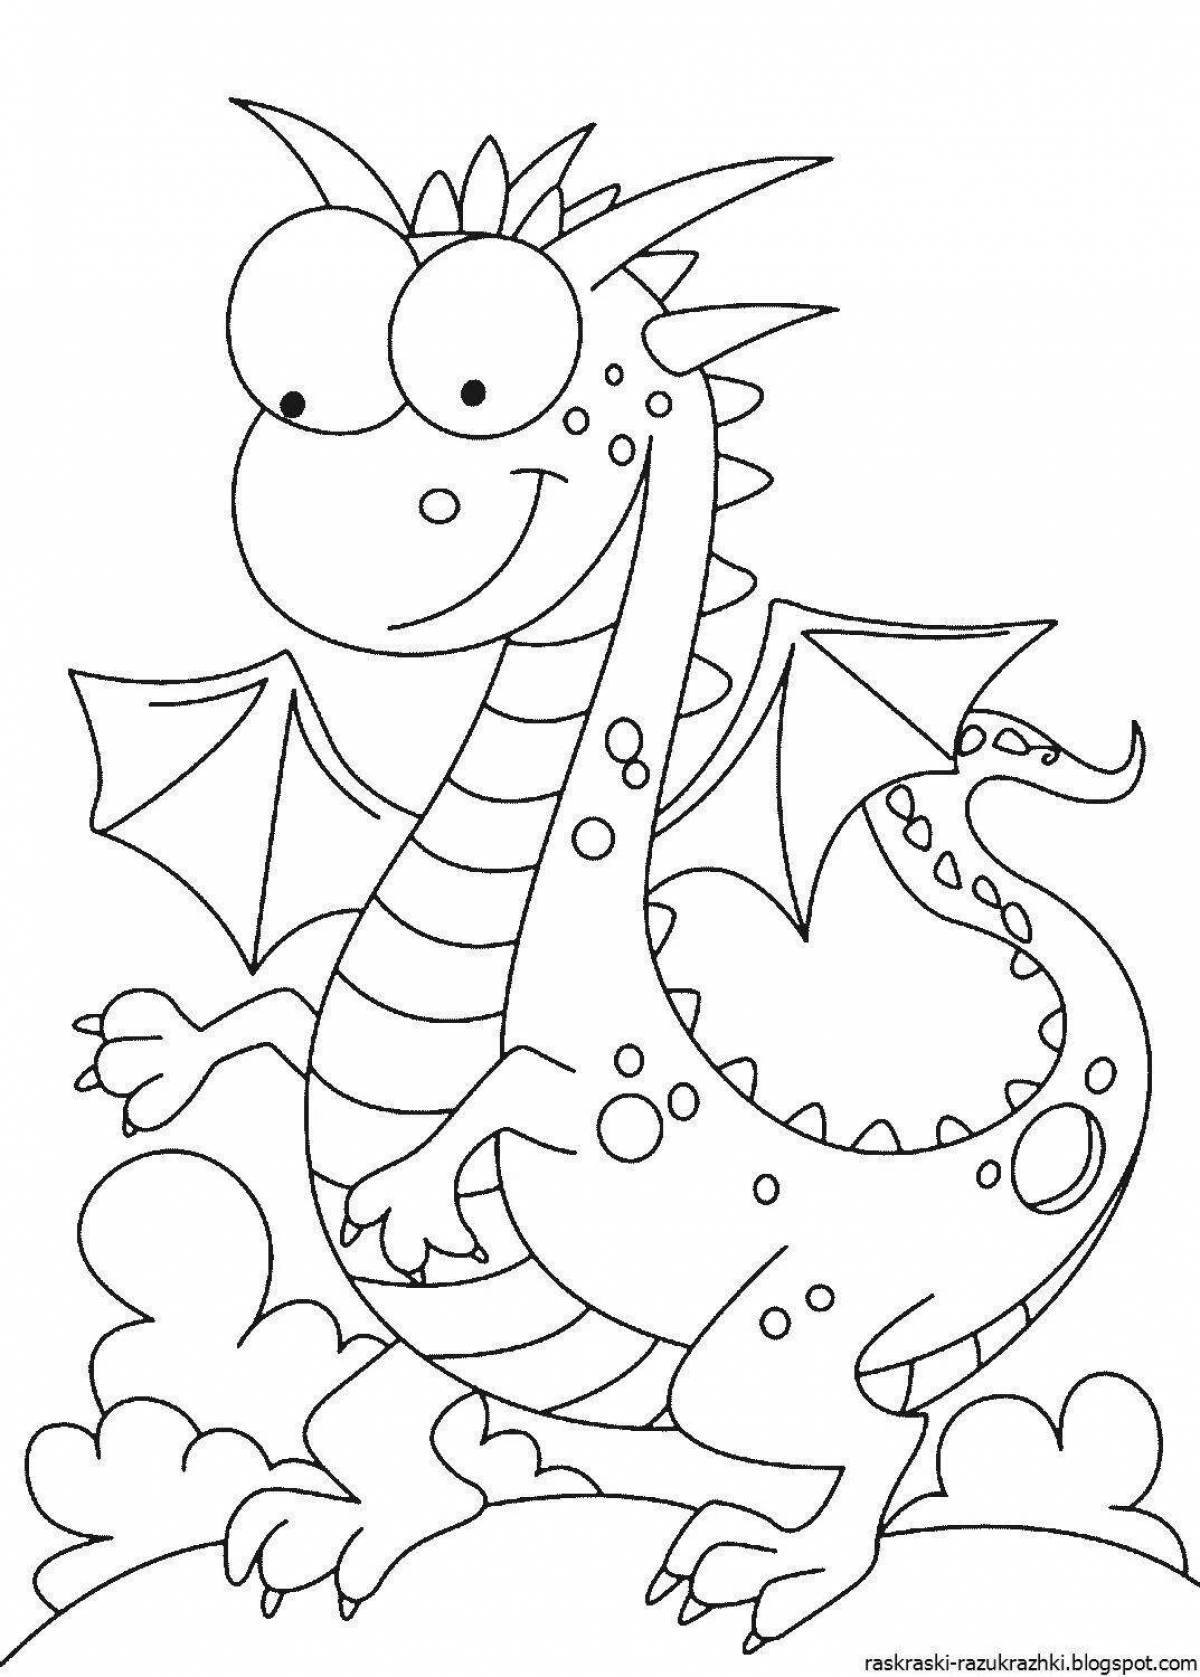 Раскраска дракона 2024. Раскраска дракон. Дракон раскраска для детей. Раскраска для дошкольников дракончик. ДРАКОНS раскраска для детей.